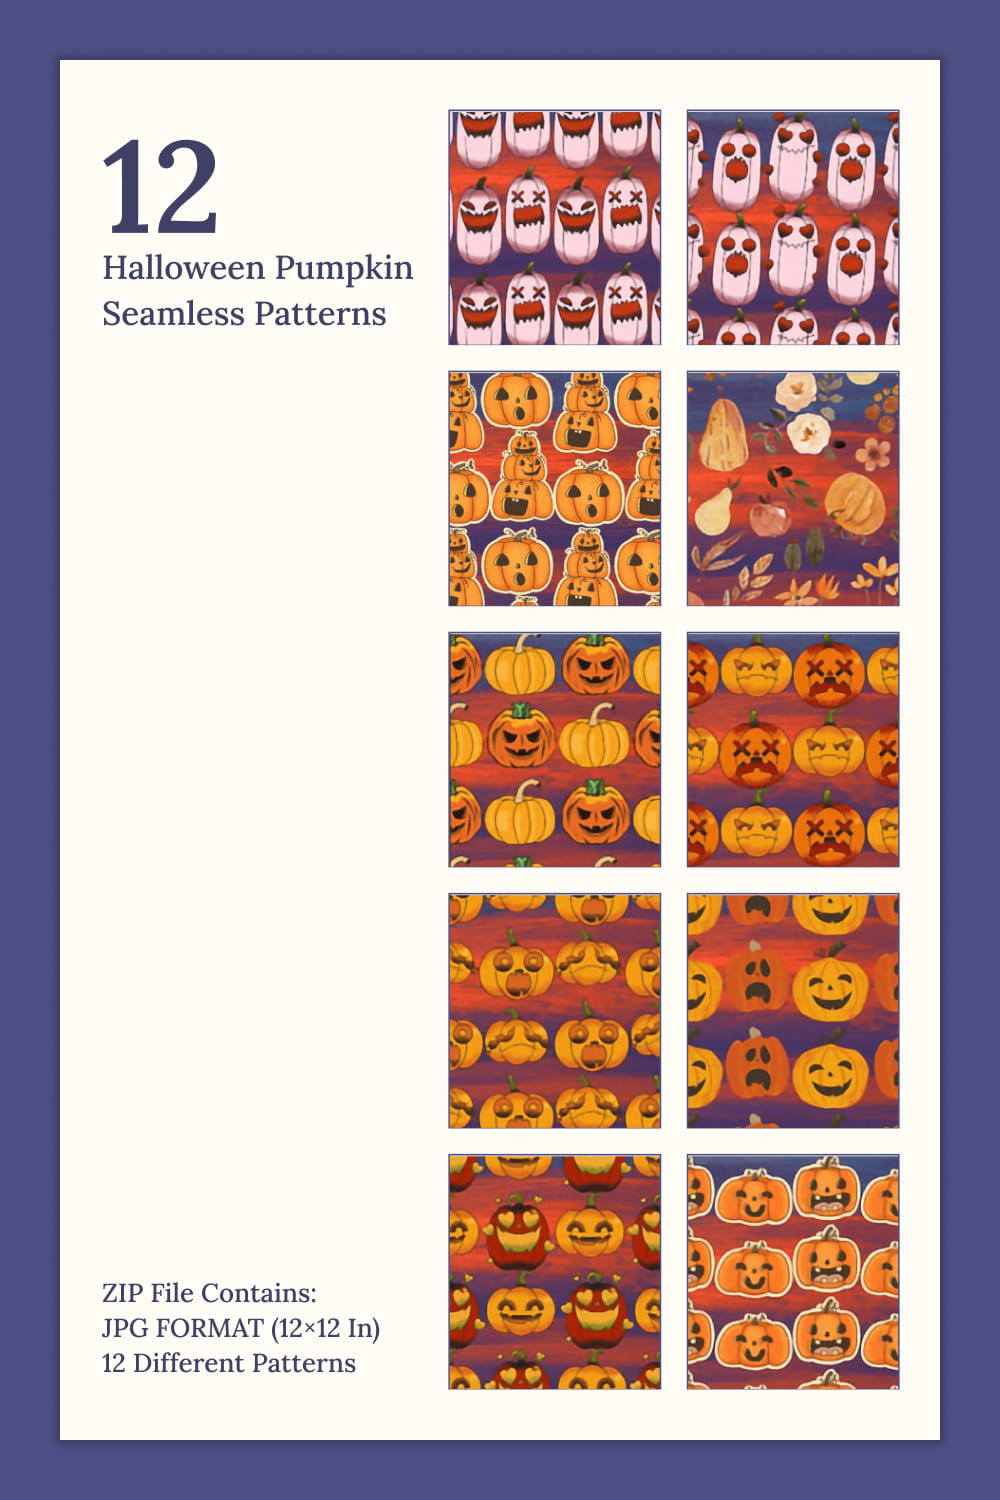 12 Halloween Pumpkin Seamless Patterns - Pinterest.